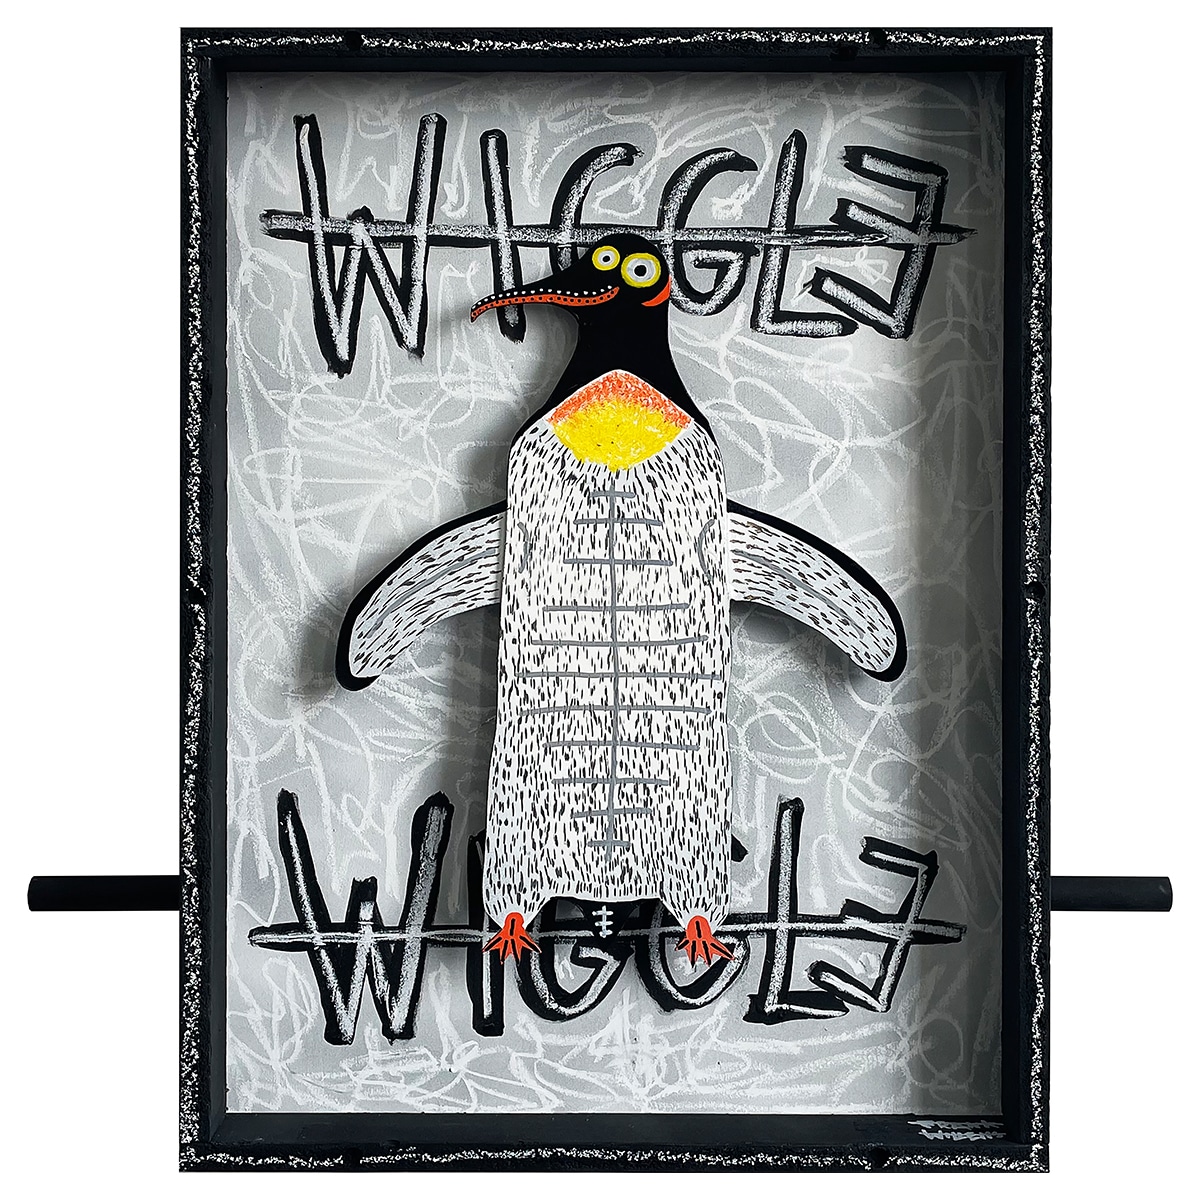 WIGGLE WIGGLE #1